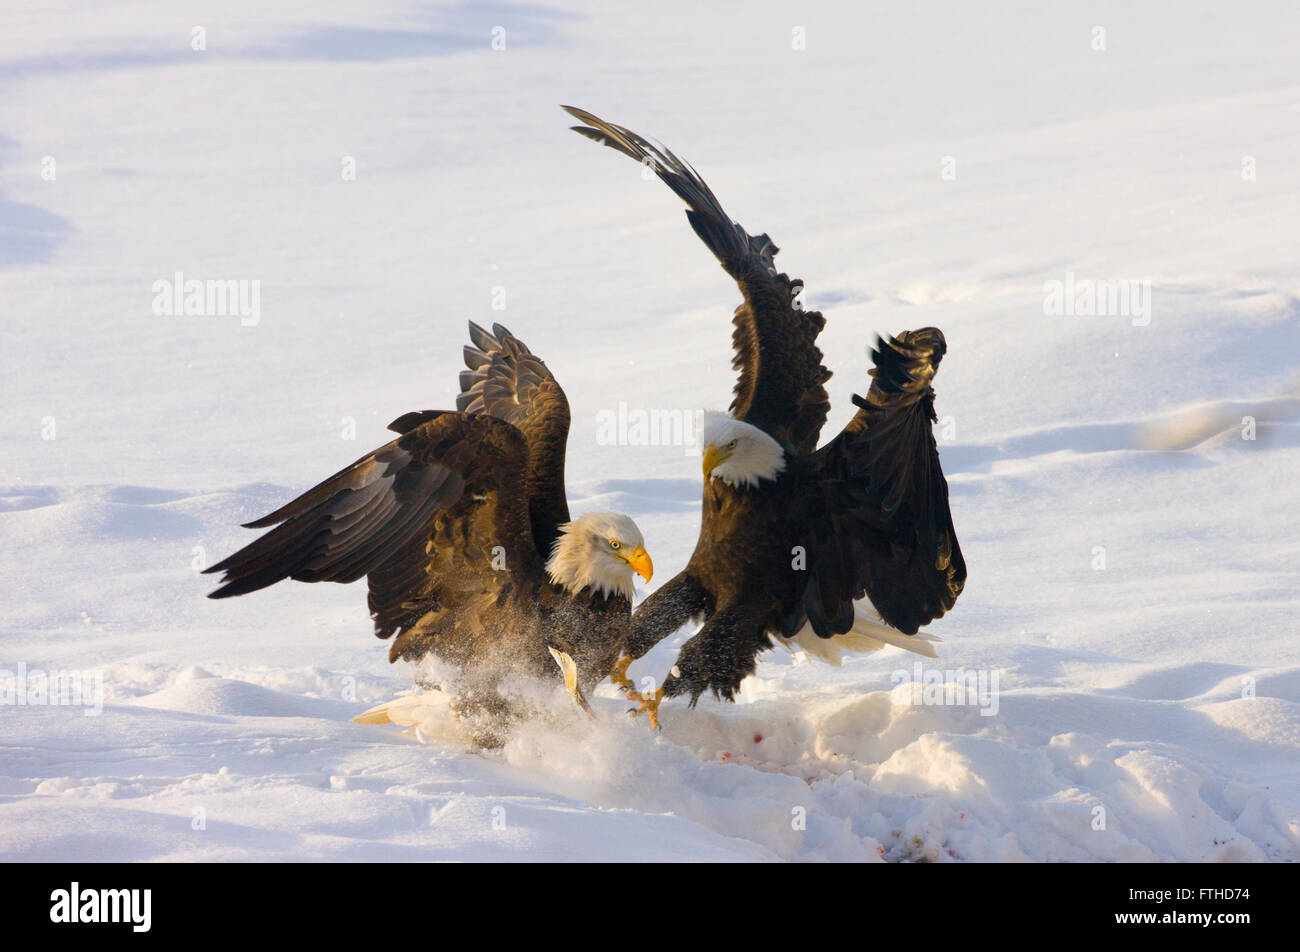 Bald Eagles fighting on snow, Alaska, USA Stock Photo